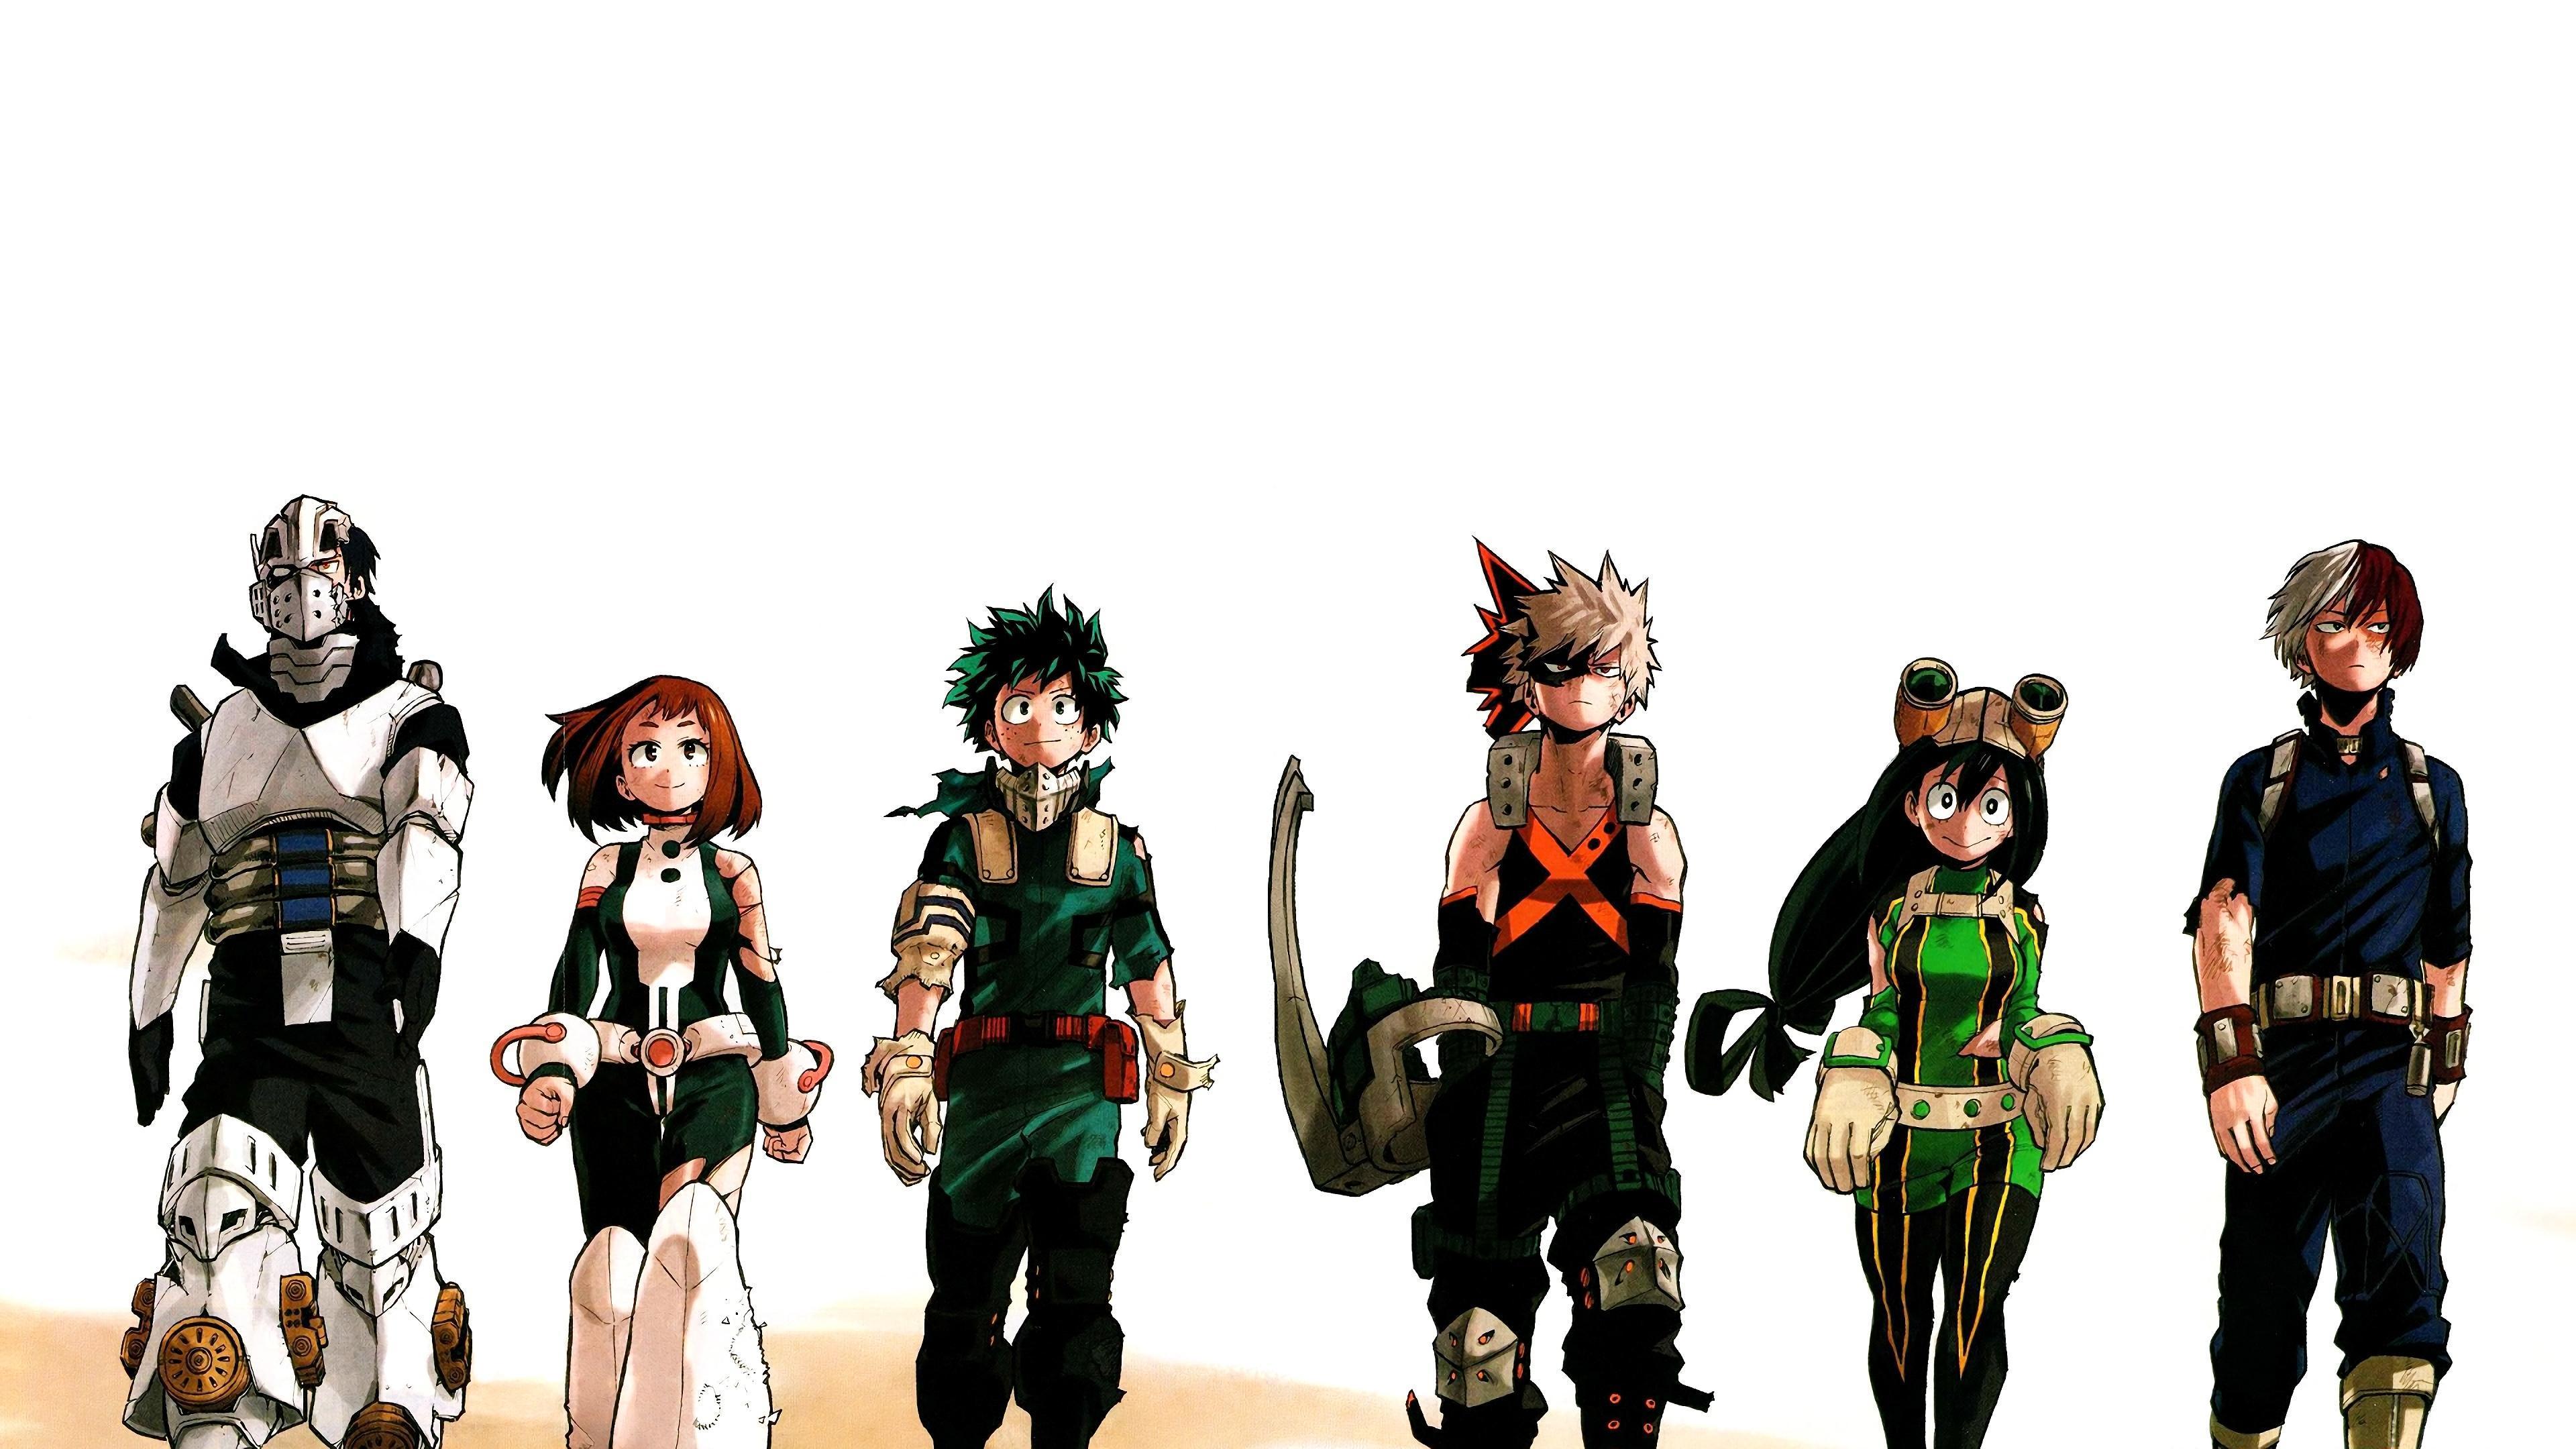 HD wallpaper, My Hero Academia, 4K, Ochaco, Tsuyu, Izuku, Tenya, Katsuki, Shoto